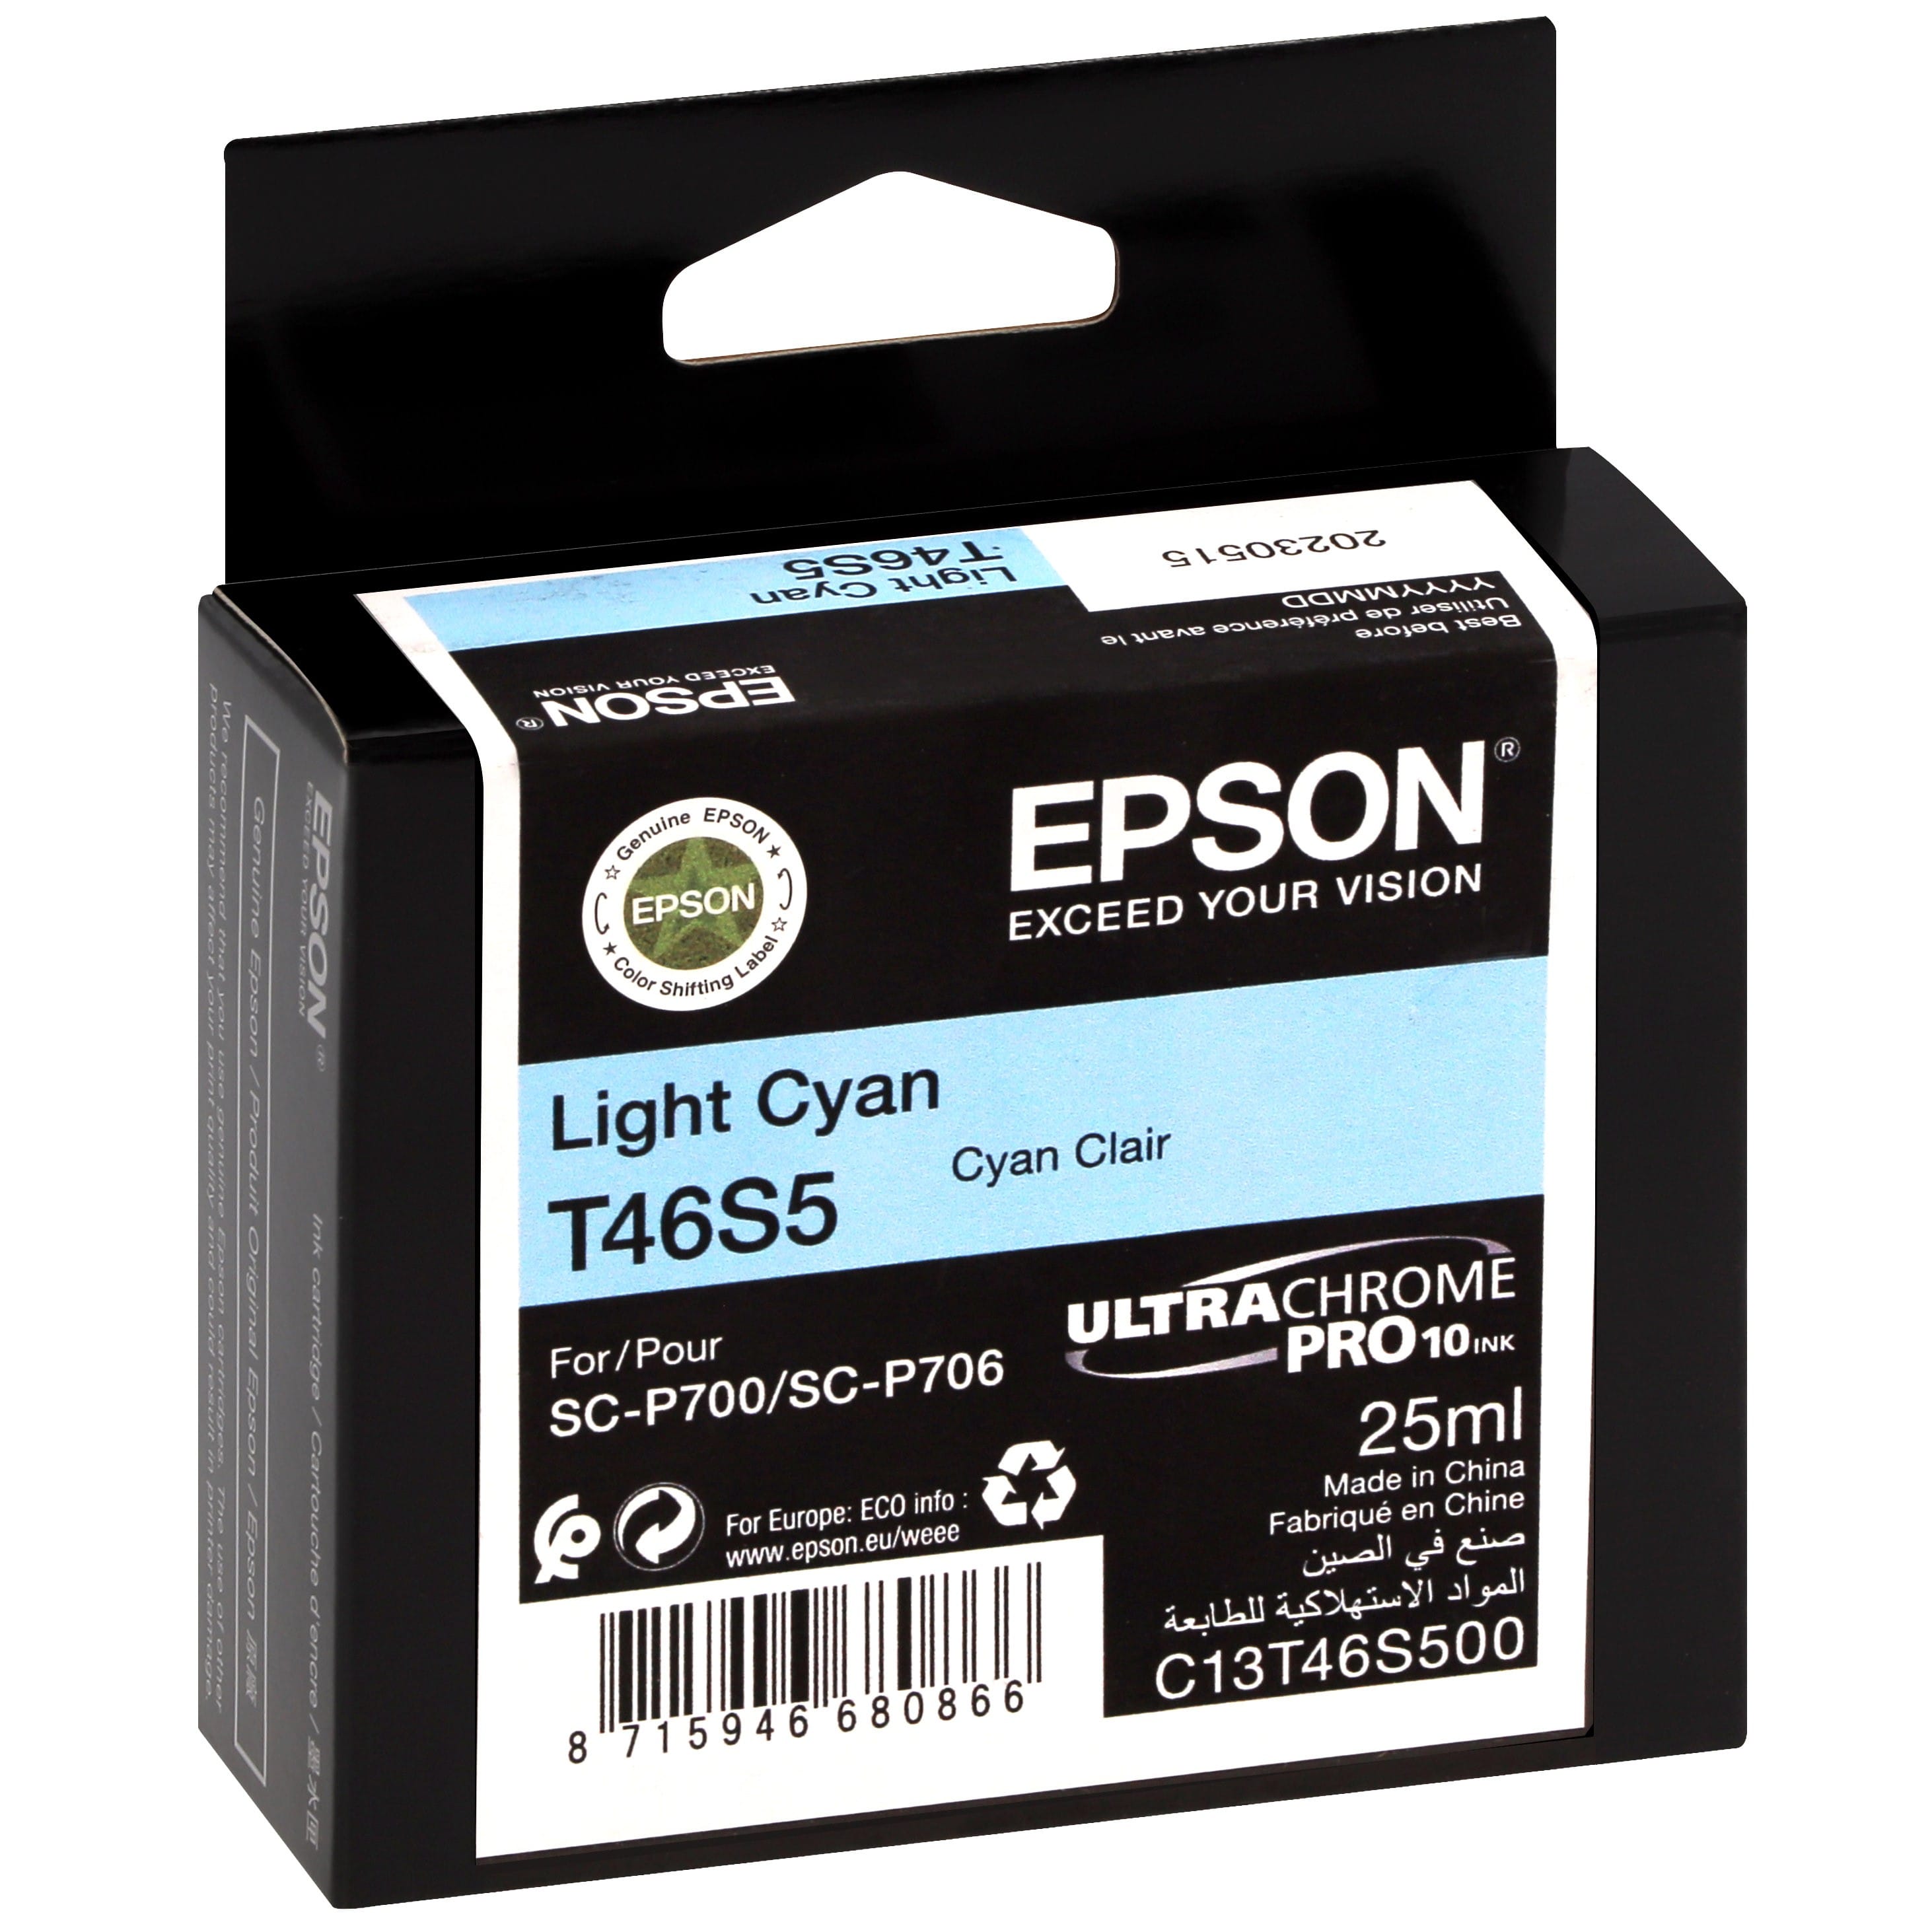 EPSON - Cartouche d'encre traceur UltraChrome Pro 10 SC-P700 - Light cyan - 25ml - T46S5